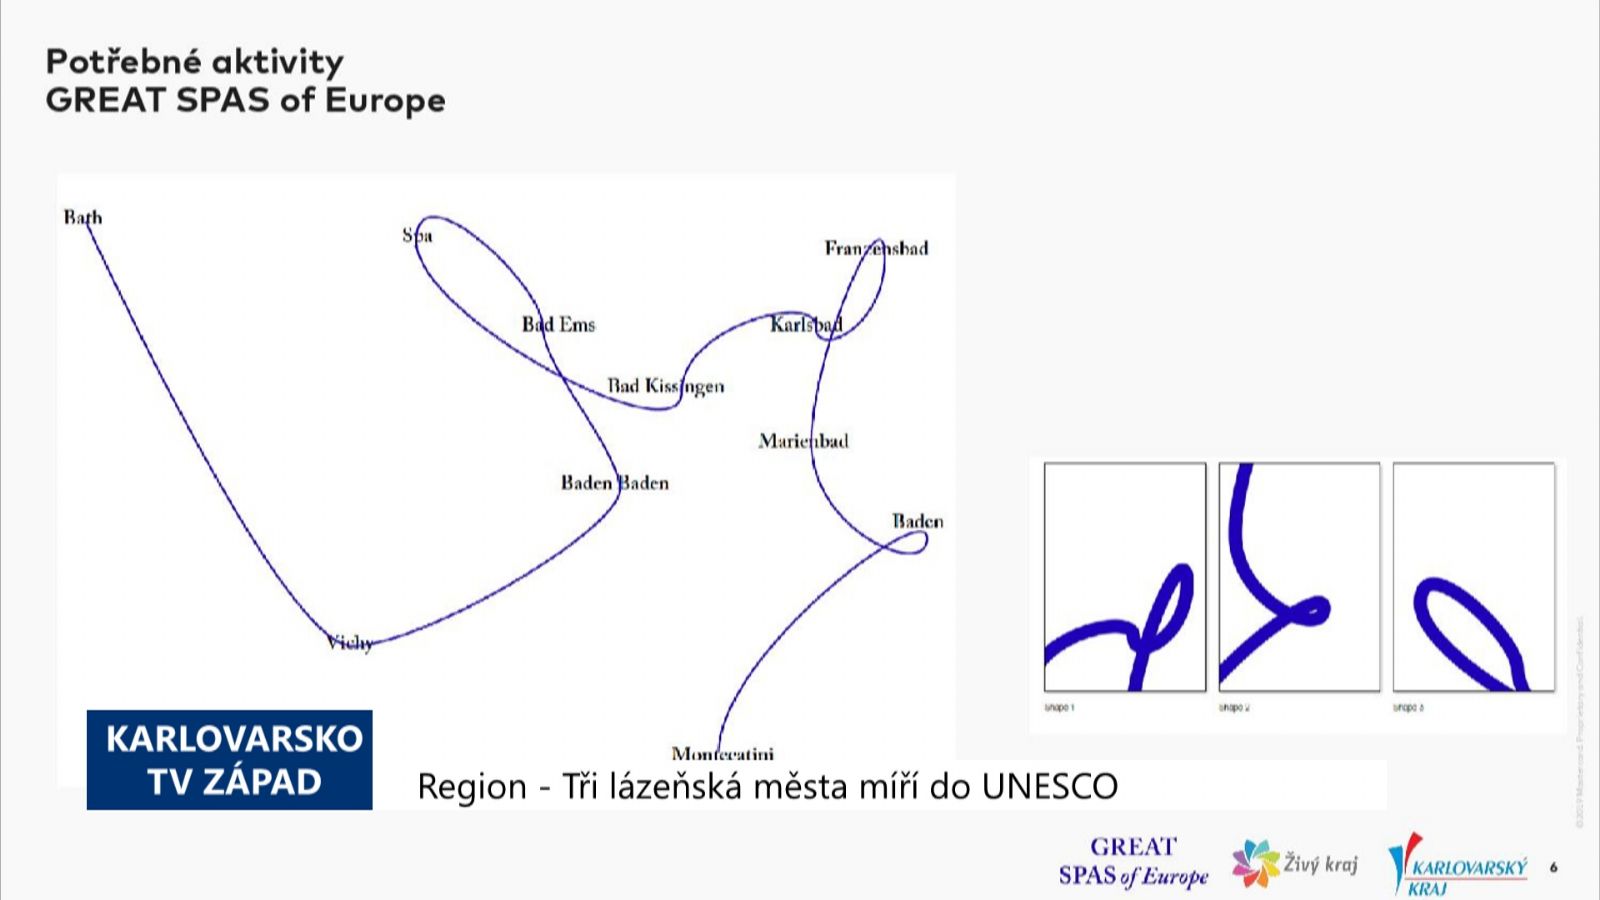 Region: Tři lázeňská města míří do UNESCO (TV Západ)